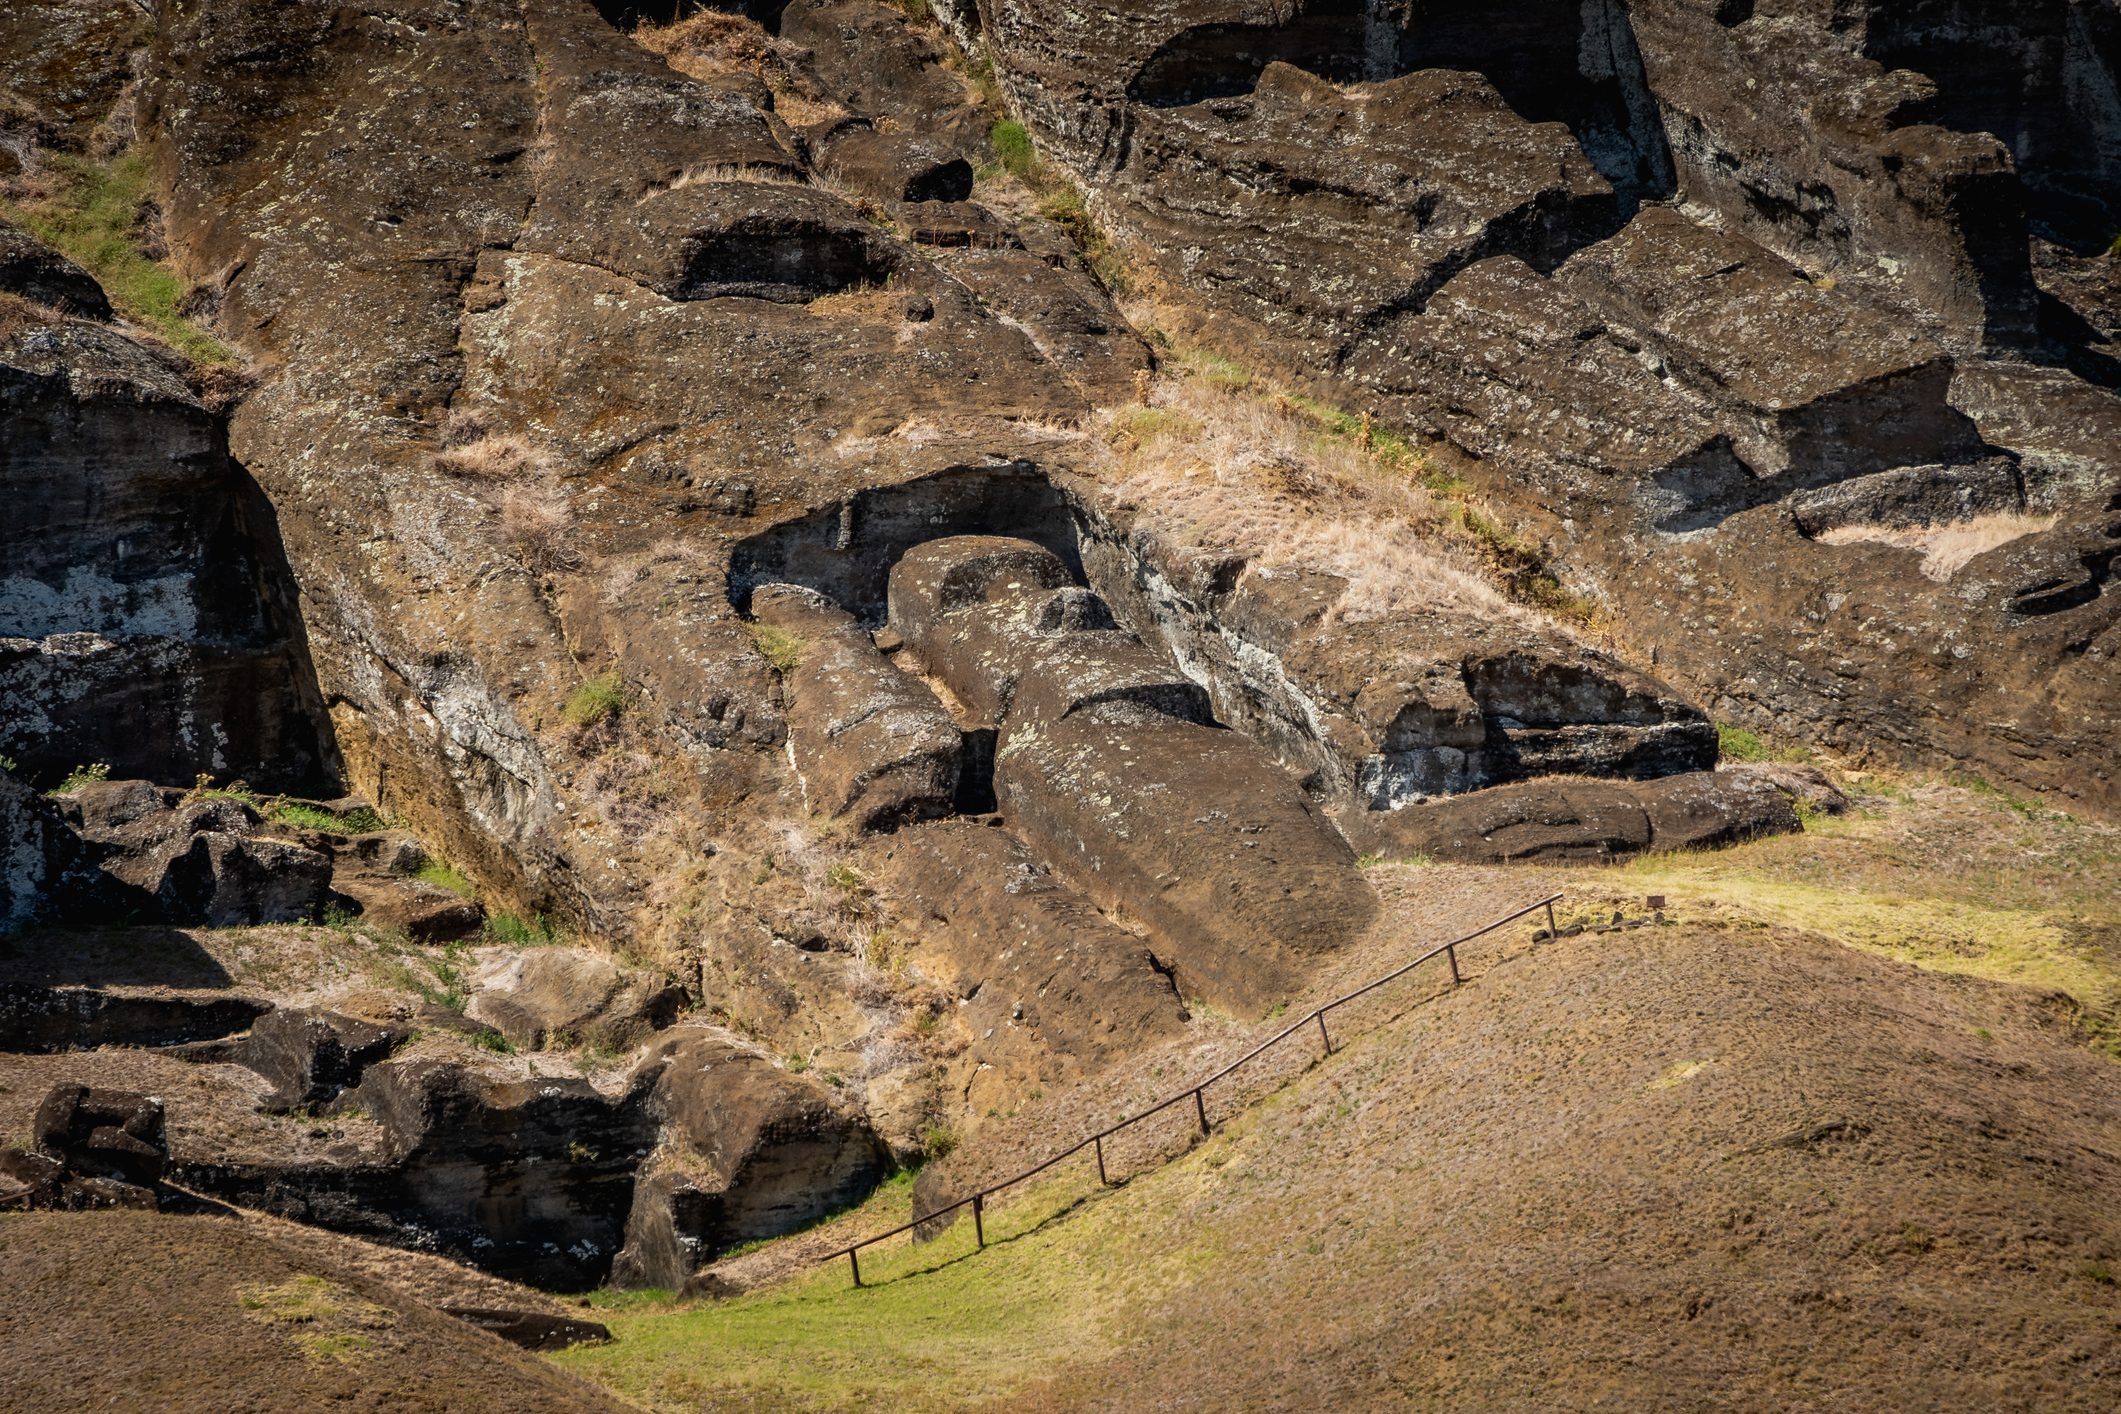 بلندترین موآی به نام پارو ۱۰ متر (۳۳ فوت) ارتفاع و ۸۲ تن وزن در رانو راراکو موآی در راپا نویی (جزیره ایستر) دارد.